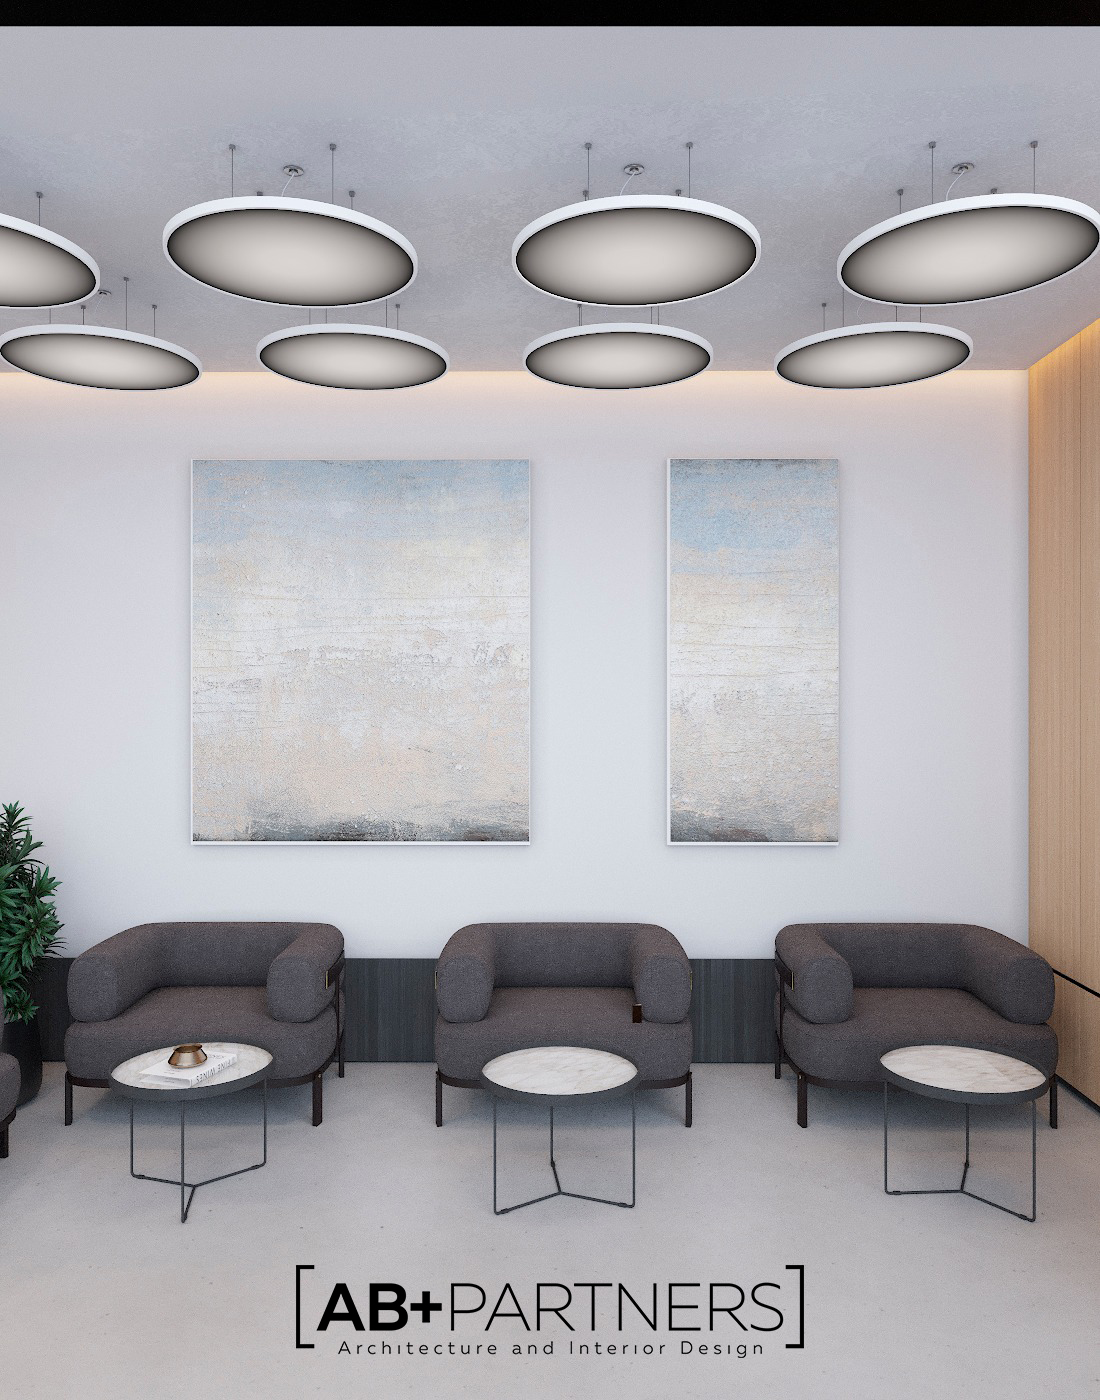 Zona de relaxare direct la oficiu, design interior modern si comod pentru lucru productiv